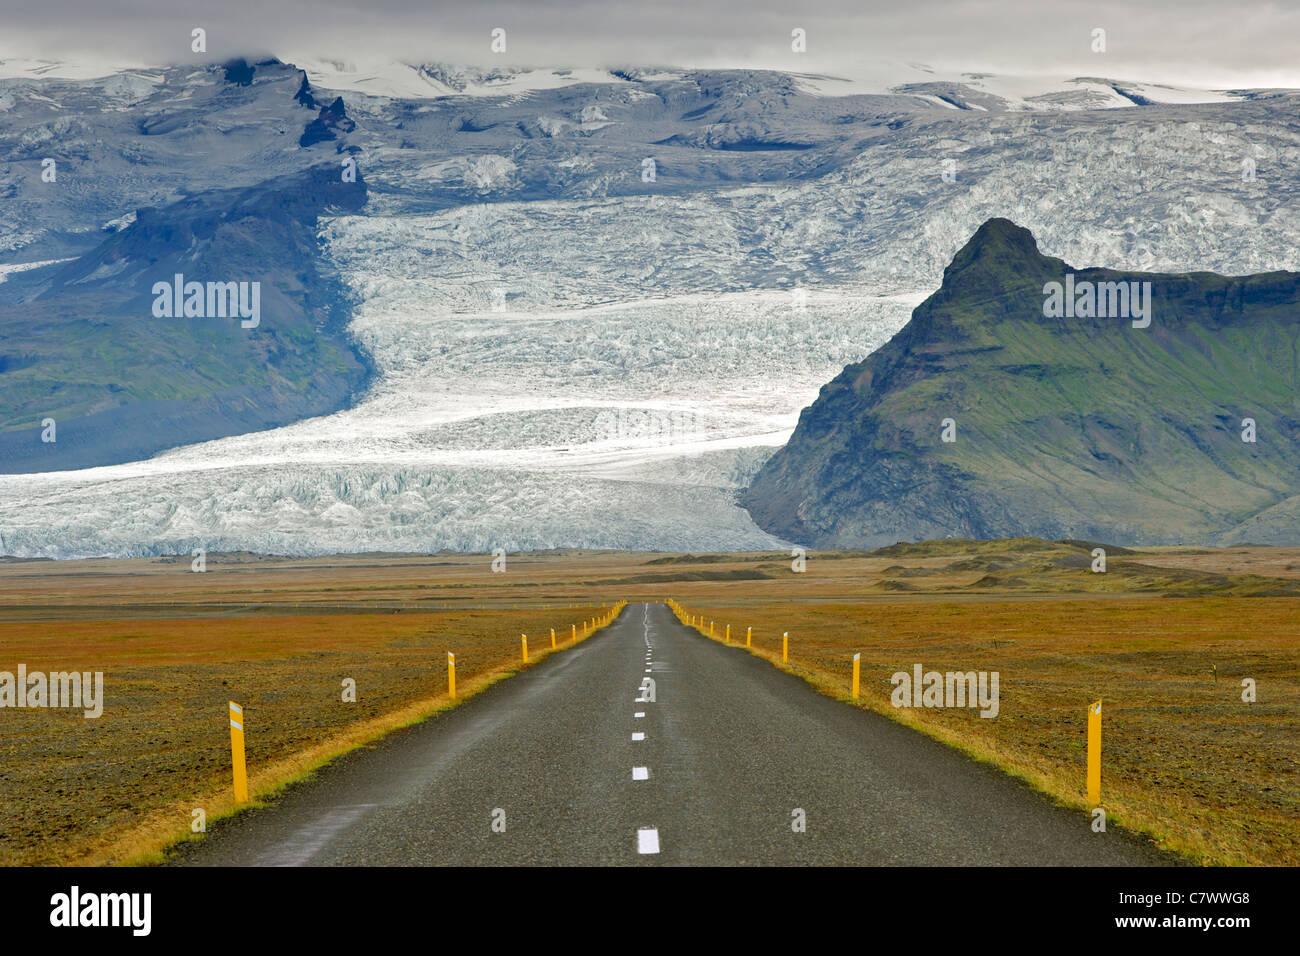 La rocade islandaise et les pentes de la plus haute montagne d'Islande Hvannadalshnúkur (2110m), une partie de l'Oraefajokull glacier. Banque D'Images